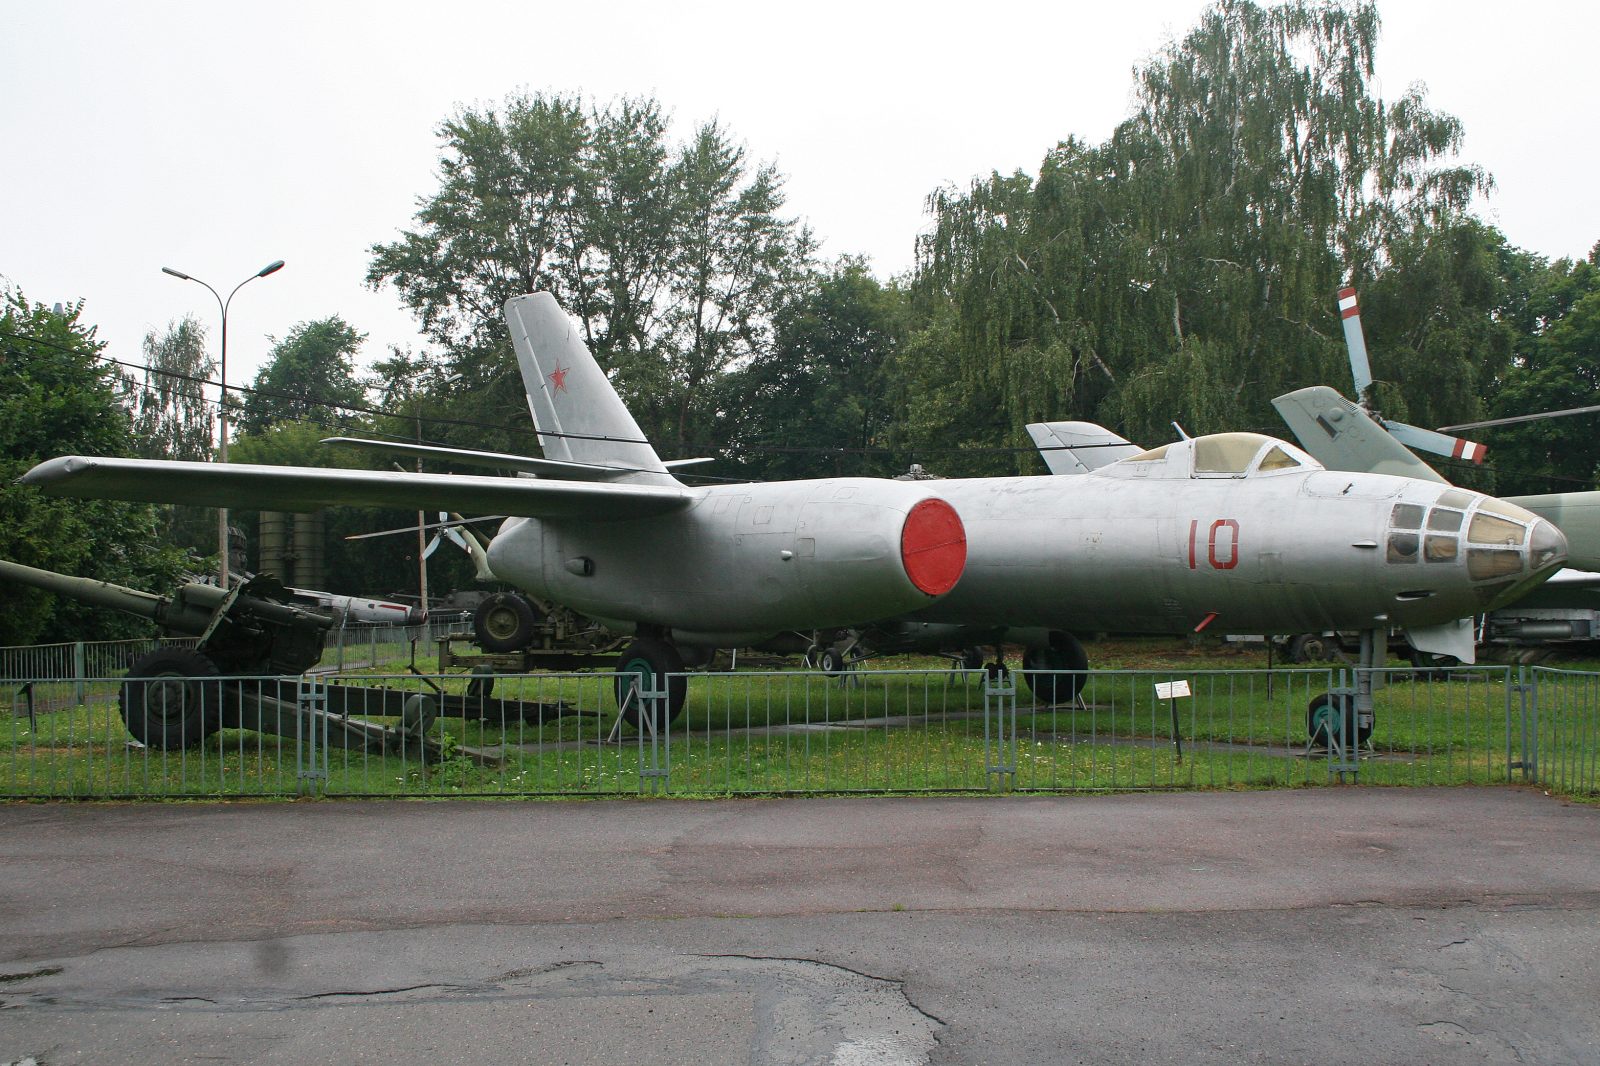 Ilyushin IL-28 Beagle: The Soviet Tactical Medium Bomber Aircraft